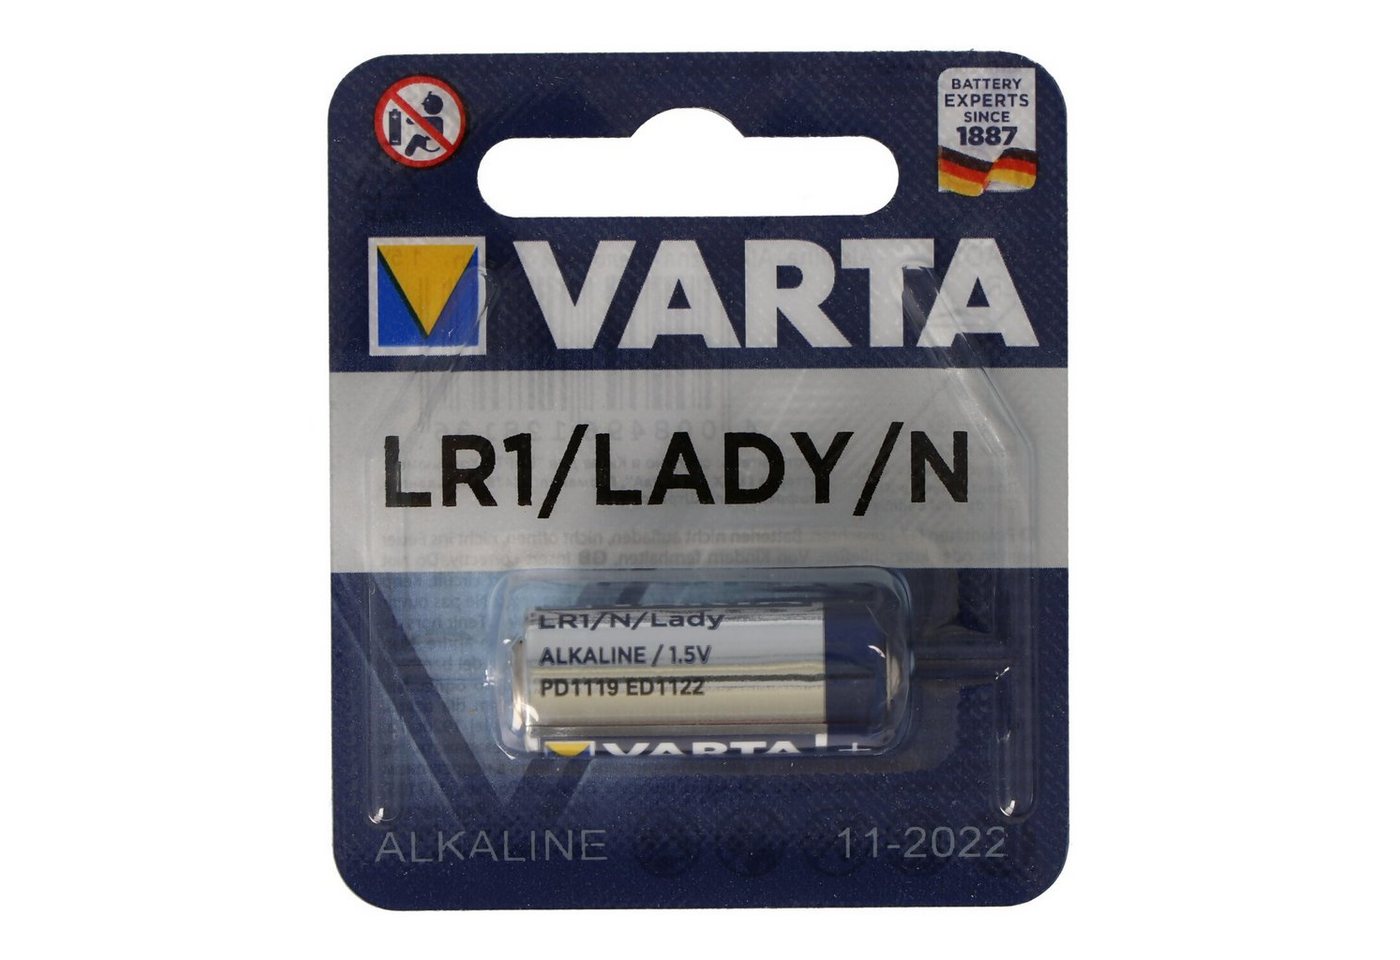 VARTA Varta 4001 High Energy LR1 / 522 / N / AM5 Batterie, (1,5 V) von VARTA